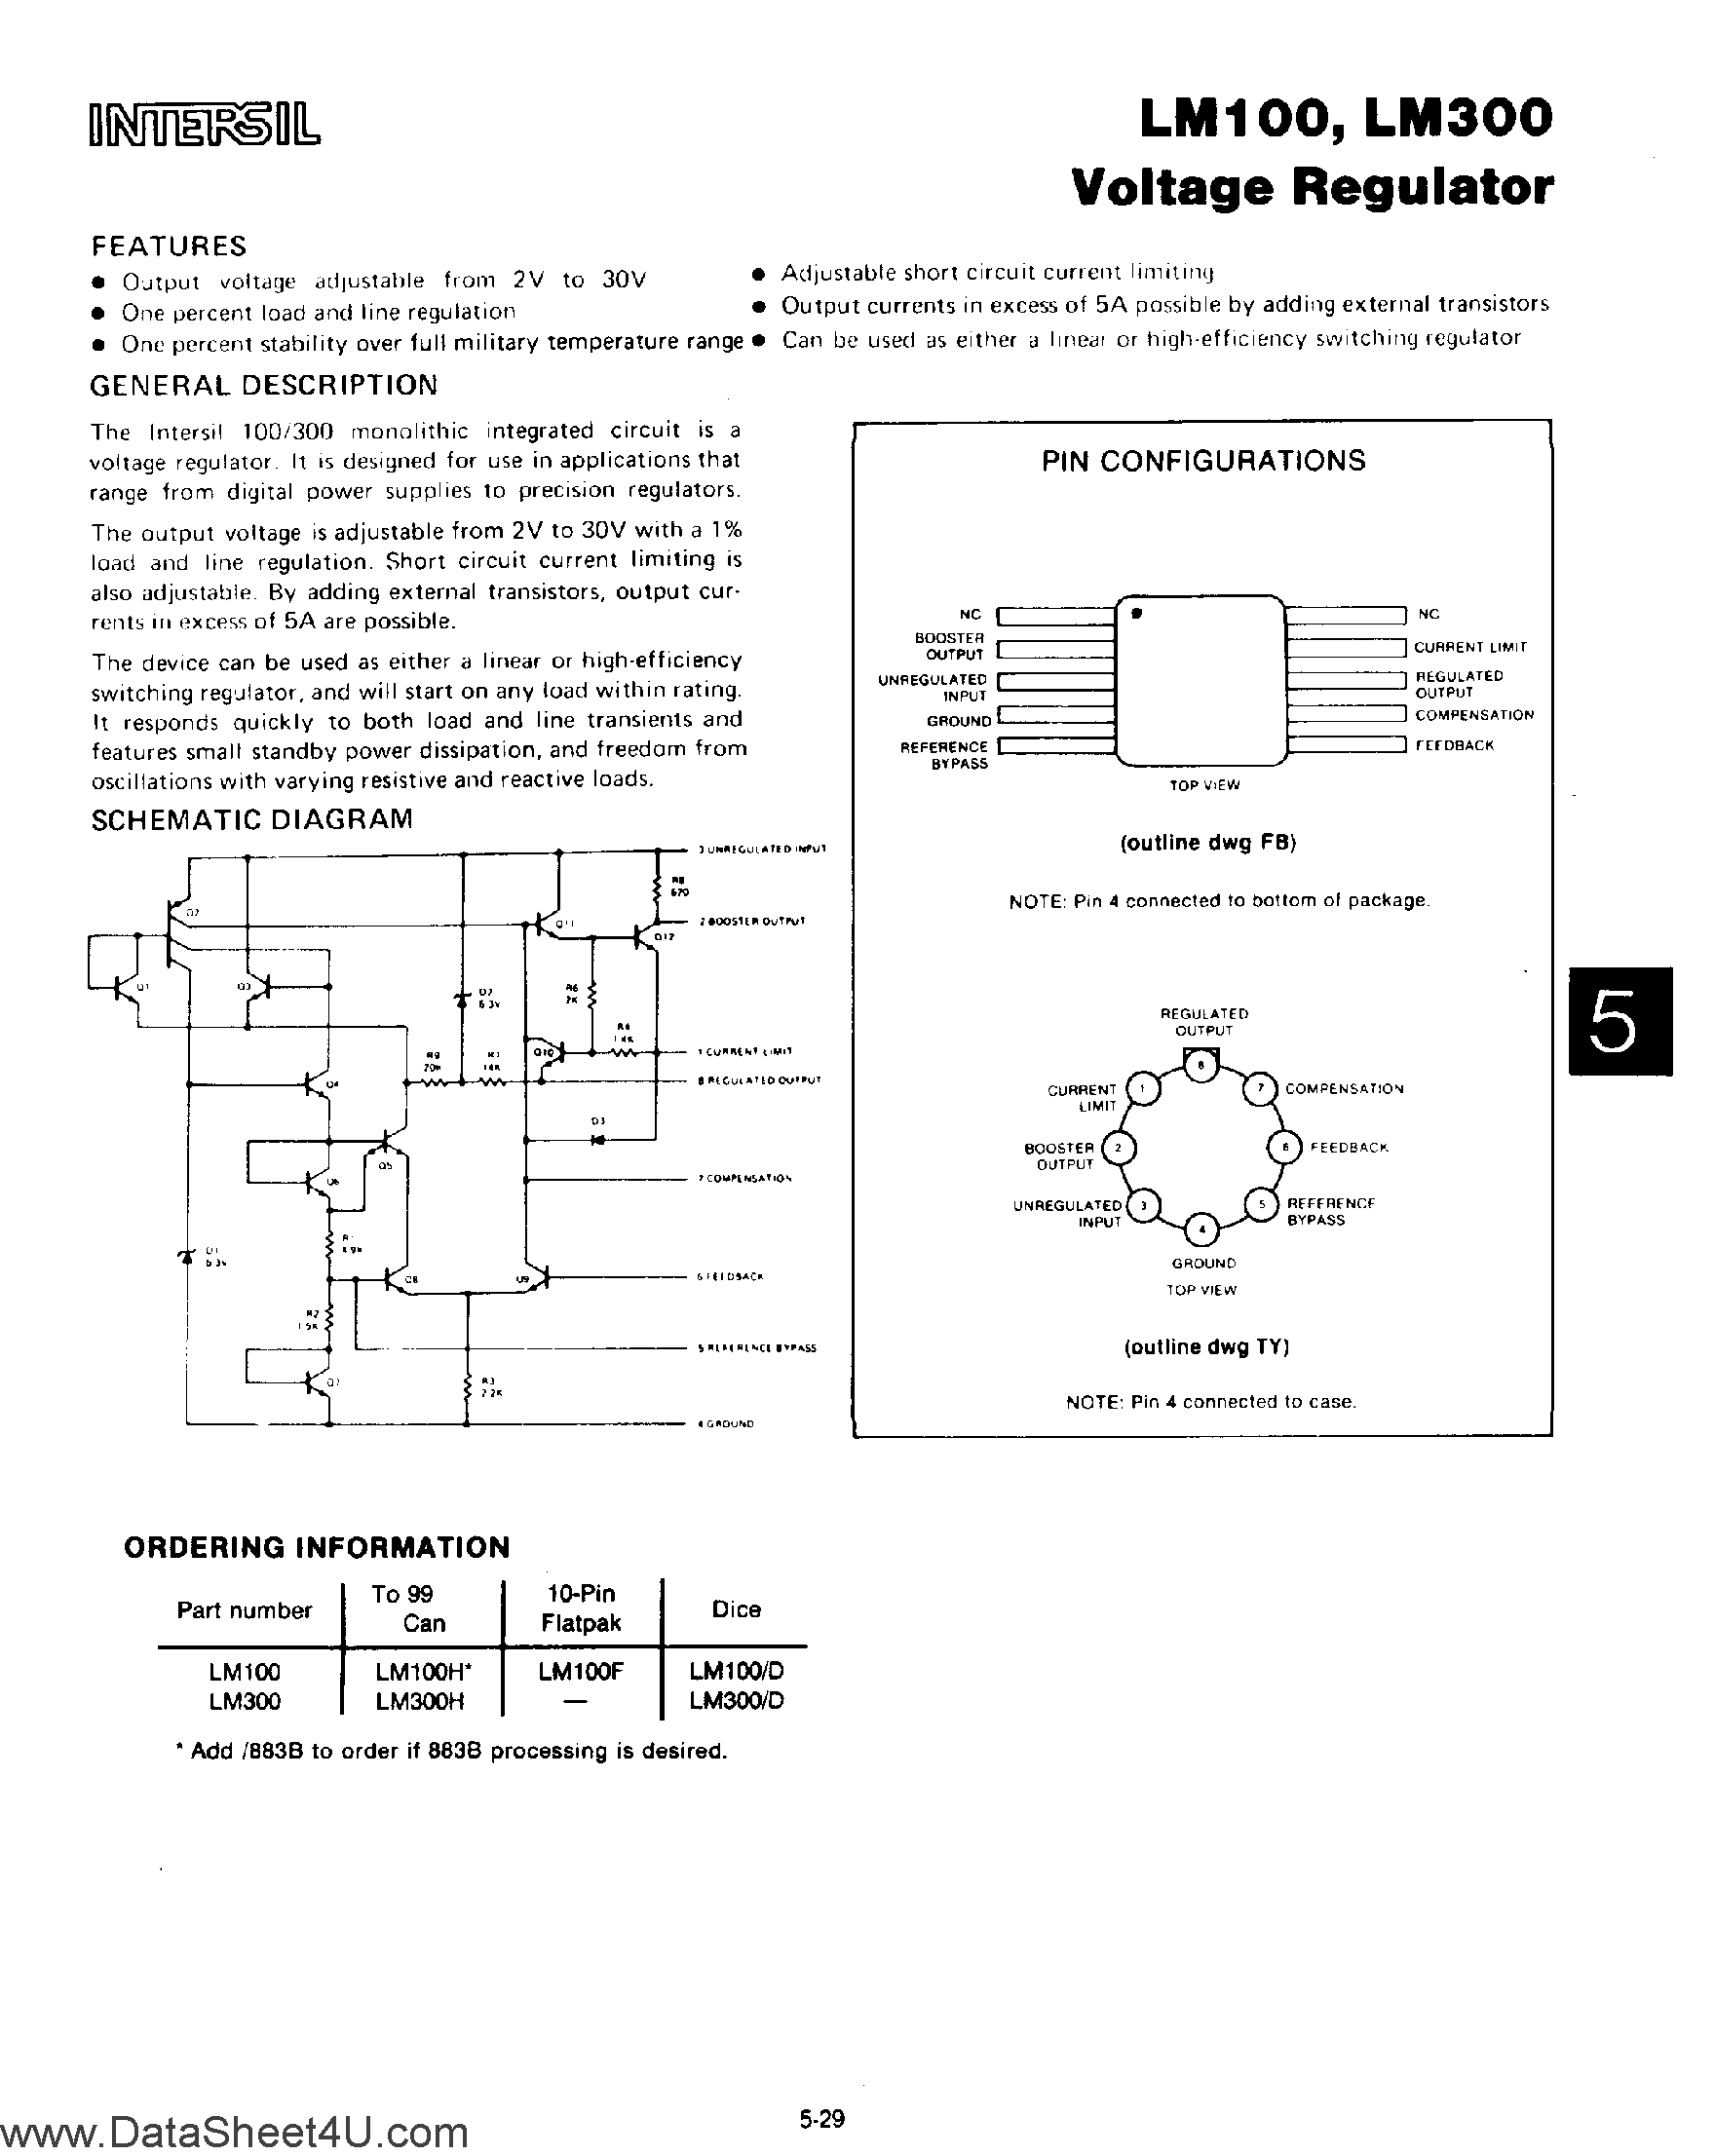 Даташит LM100 - Voltage Regulator страница 1